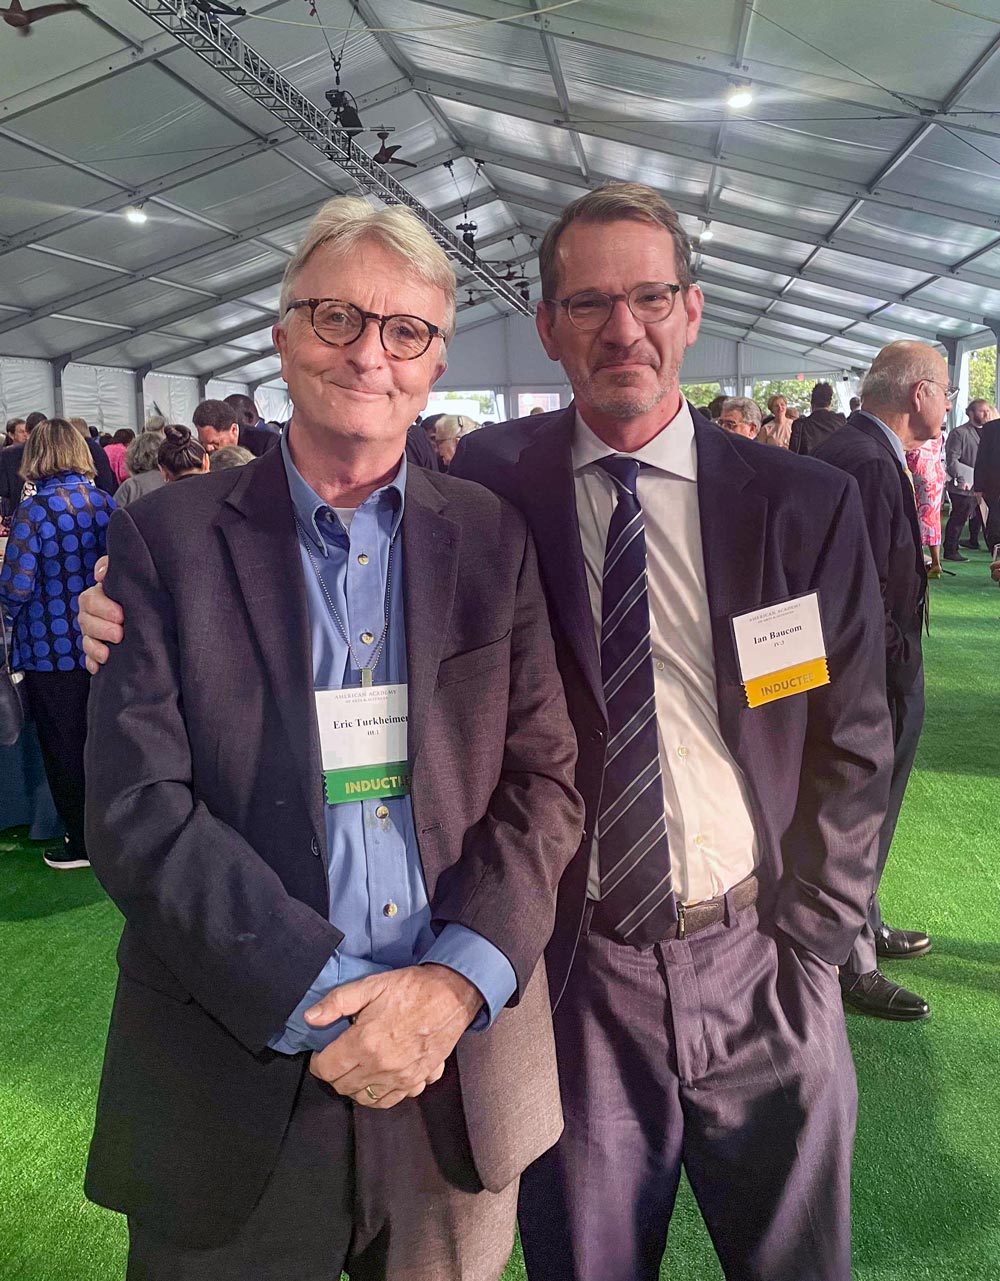 Eric Turkheimer and Ian Baucom pose for a photo at an event under a tent